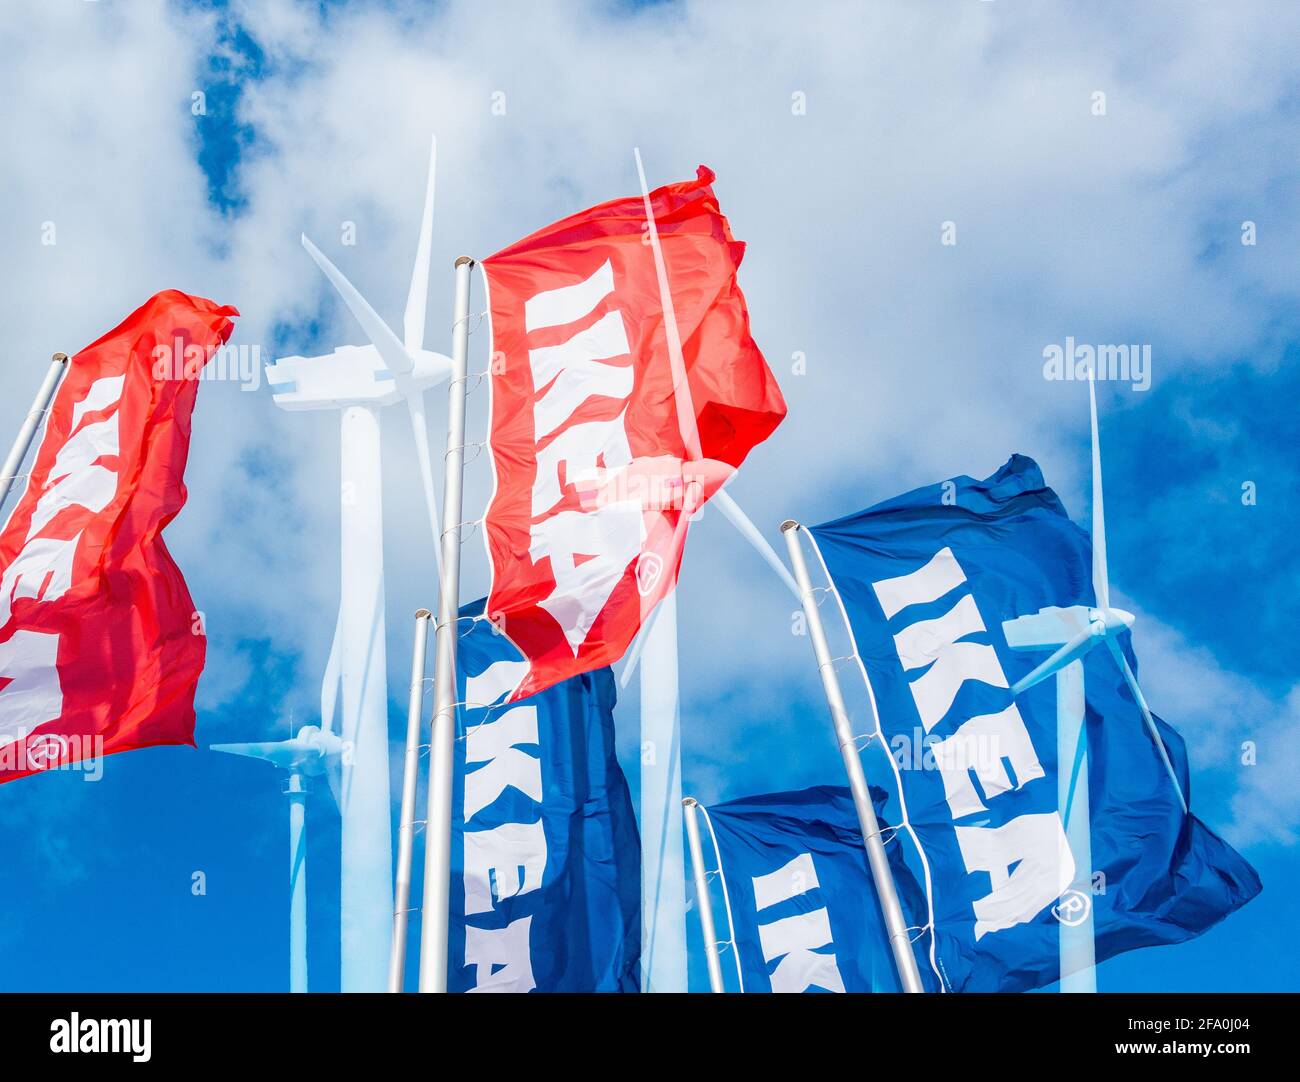 Turbine eoliche e bandiere Ikea composito. IKEA prevede di costruire parchi eolici e solari. Foto Stock